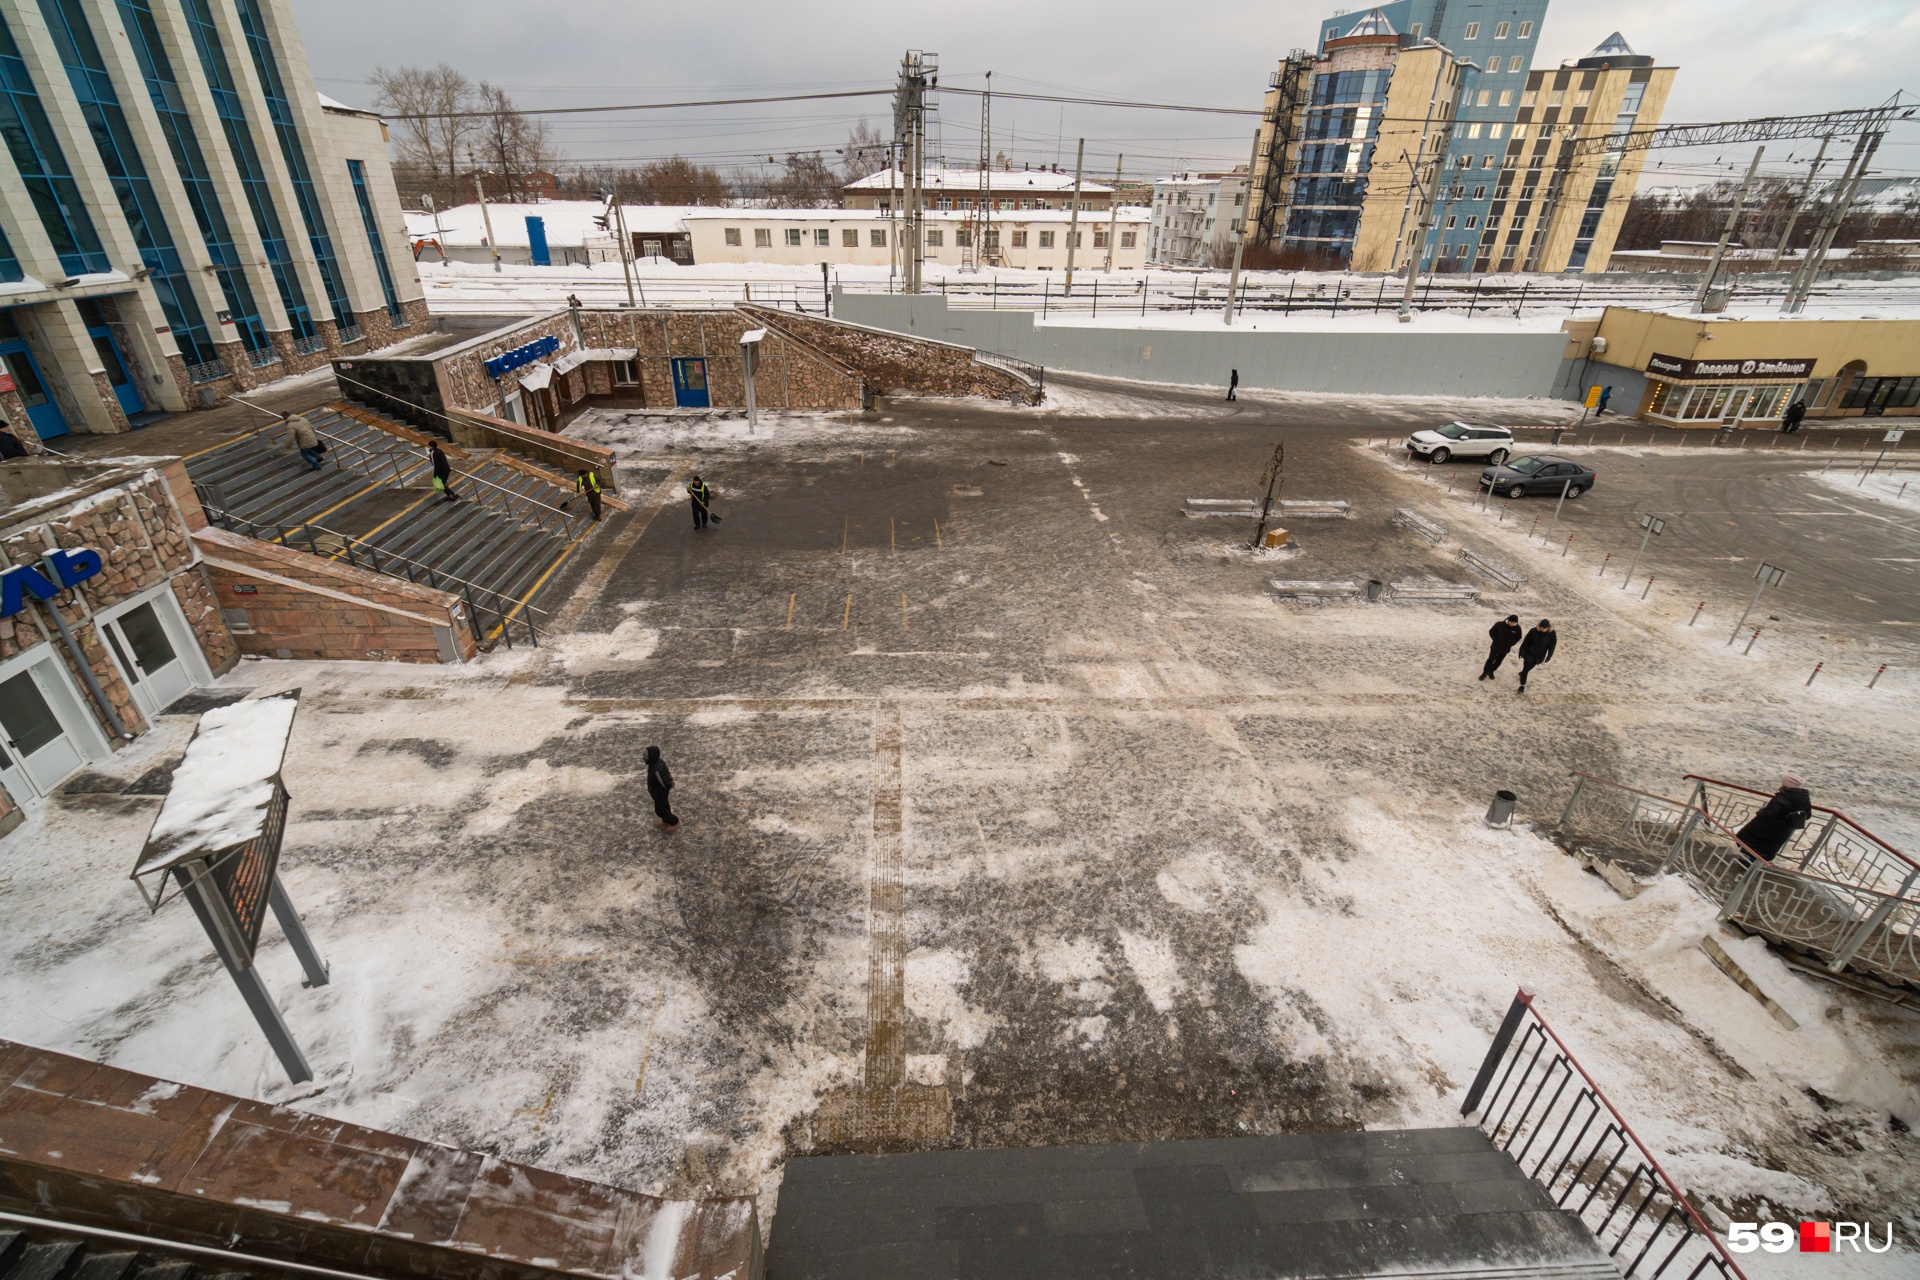 Площадь перед единственным в Перми железнодорожным вокзалом представляет из себя бетонное поле, а за ним — огромная парковка